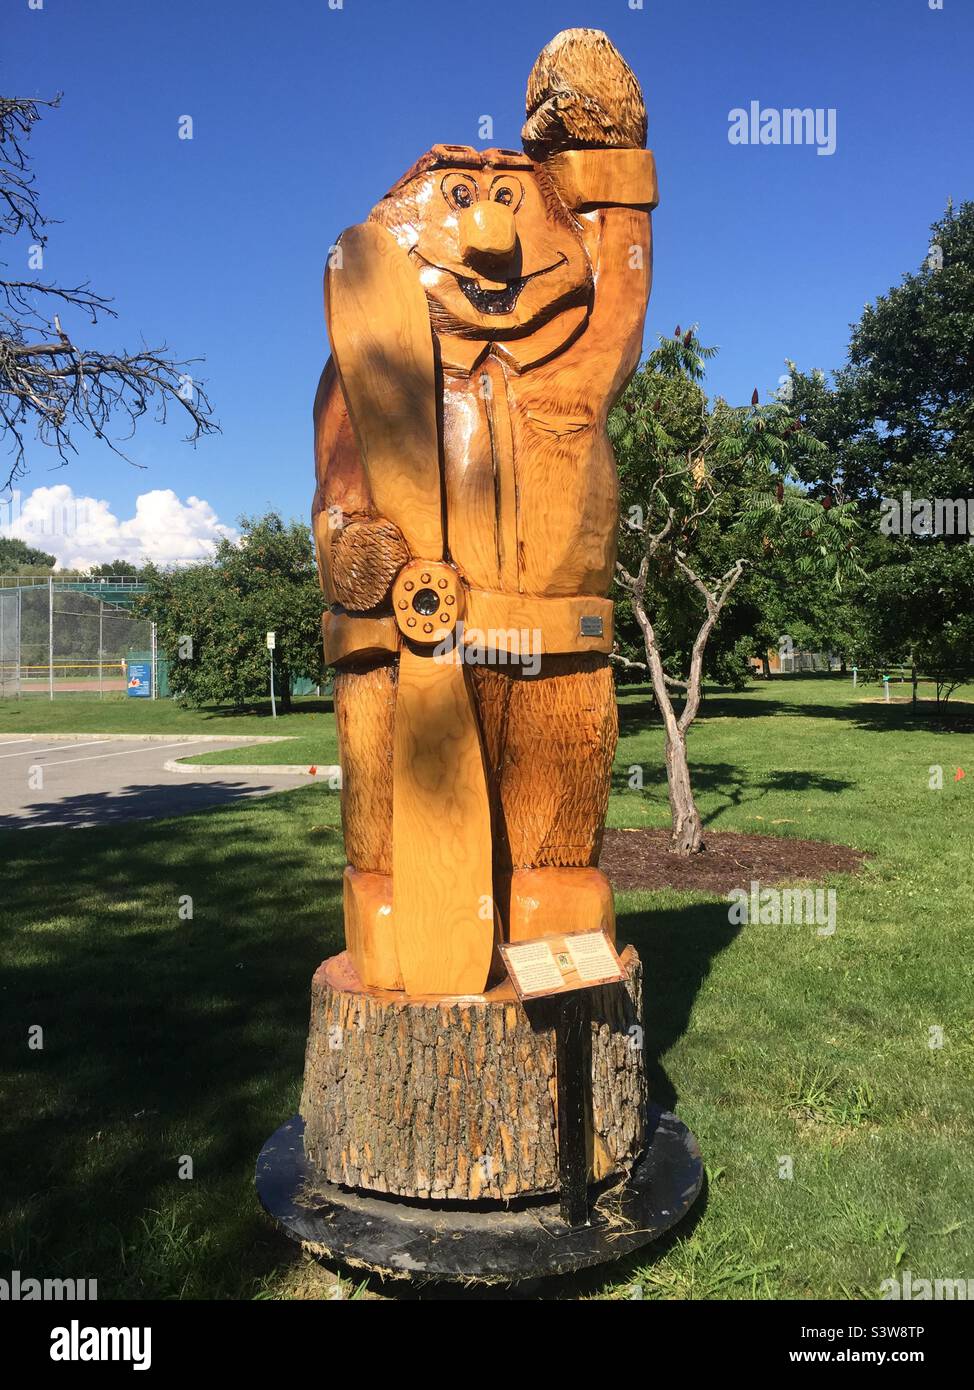 Sculpture hachrée d'un frêne endommagé par l'agrile du frêne, Dorval, Québec, Canada. Une section de l'arborescence réelle est la base. L'art est sorti d'un désastre. Deuxième vie pour un arbre en train de mourir. Banque D'Images